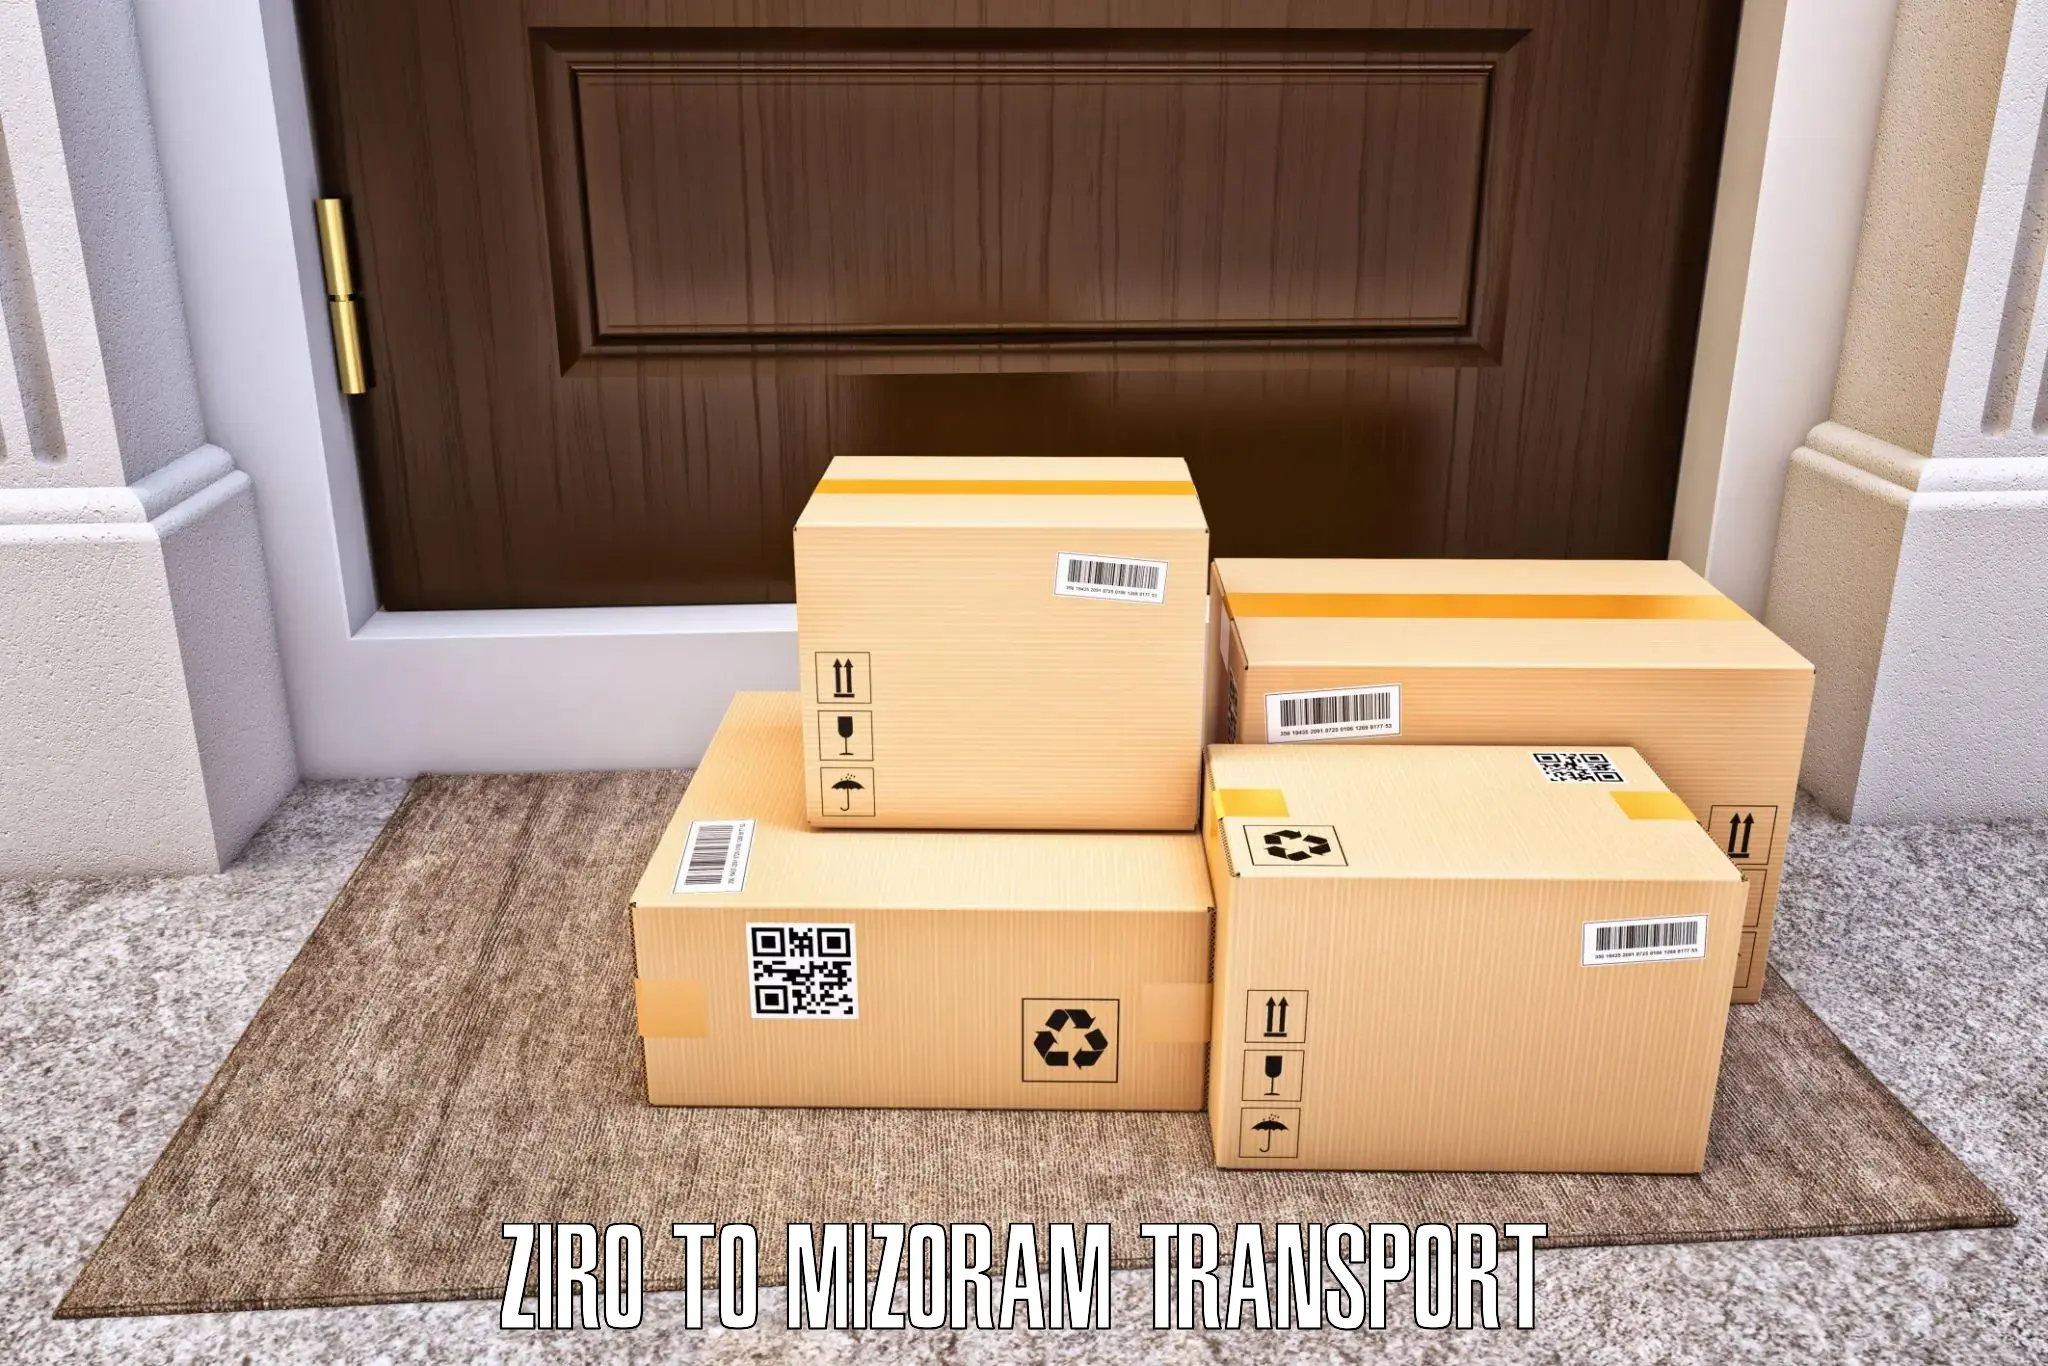 Online transport booking Ziro to Siaha